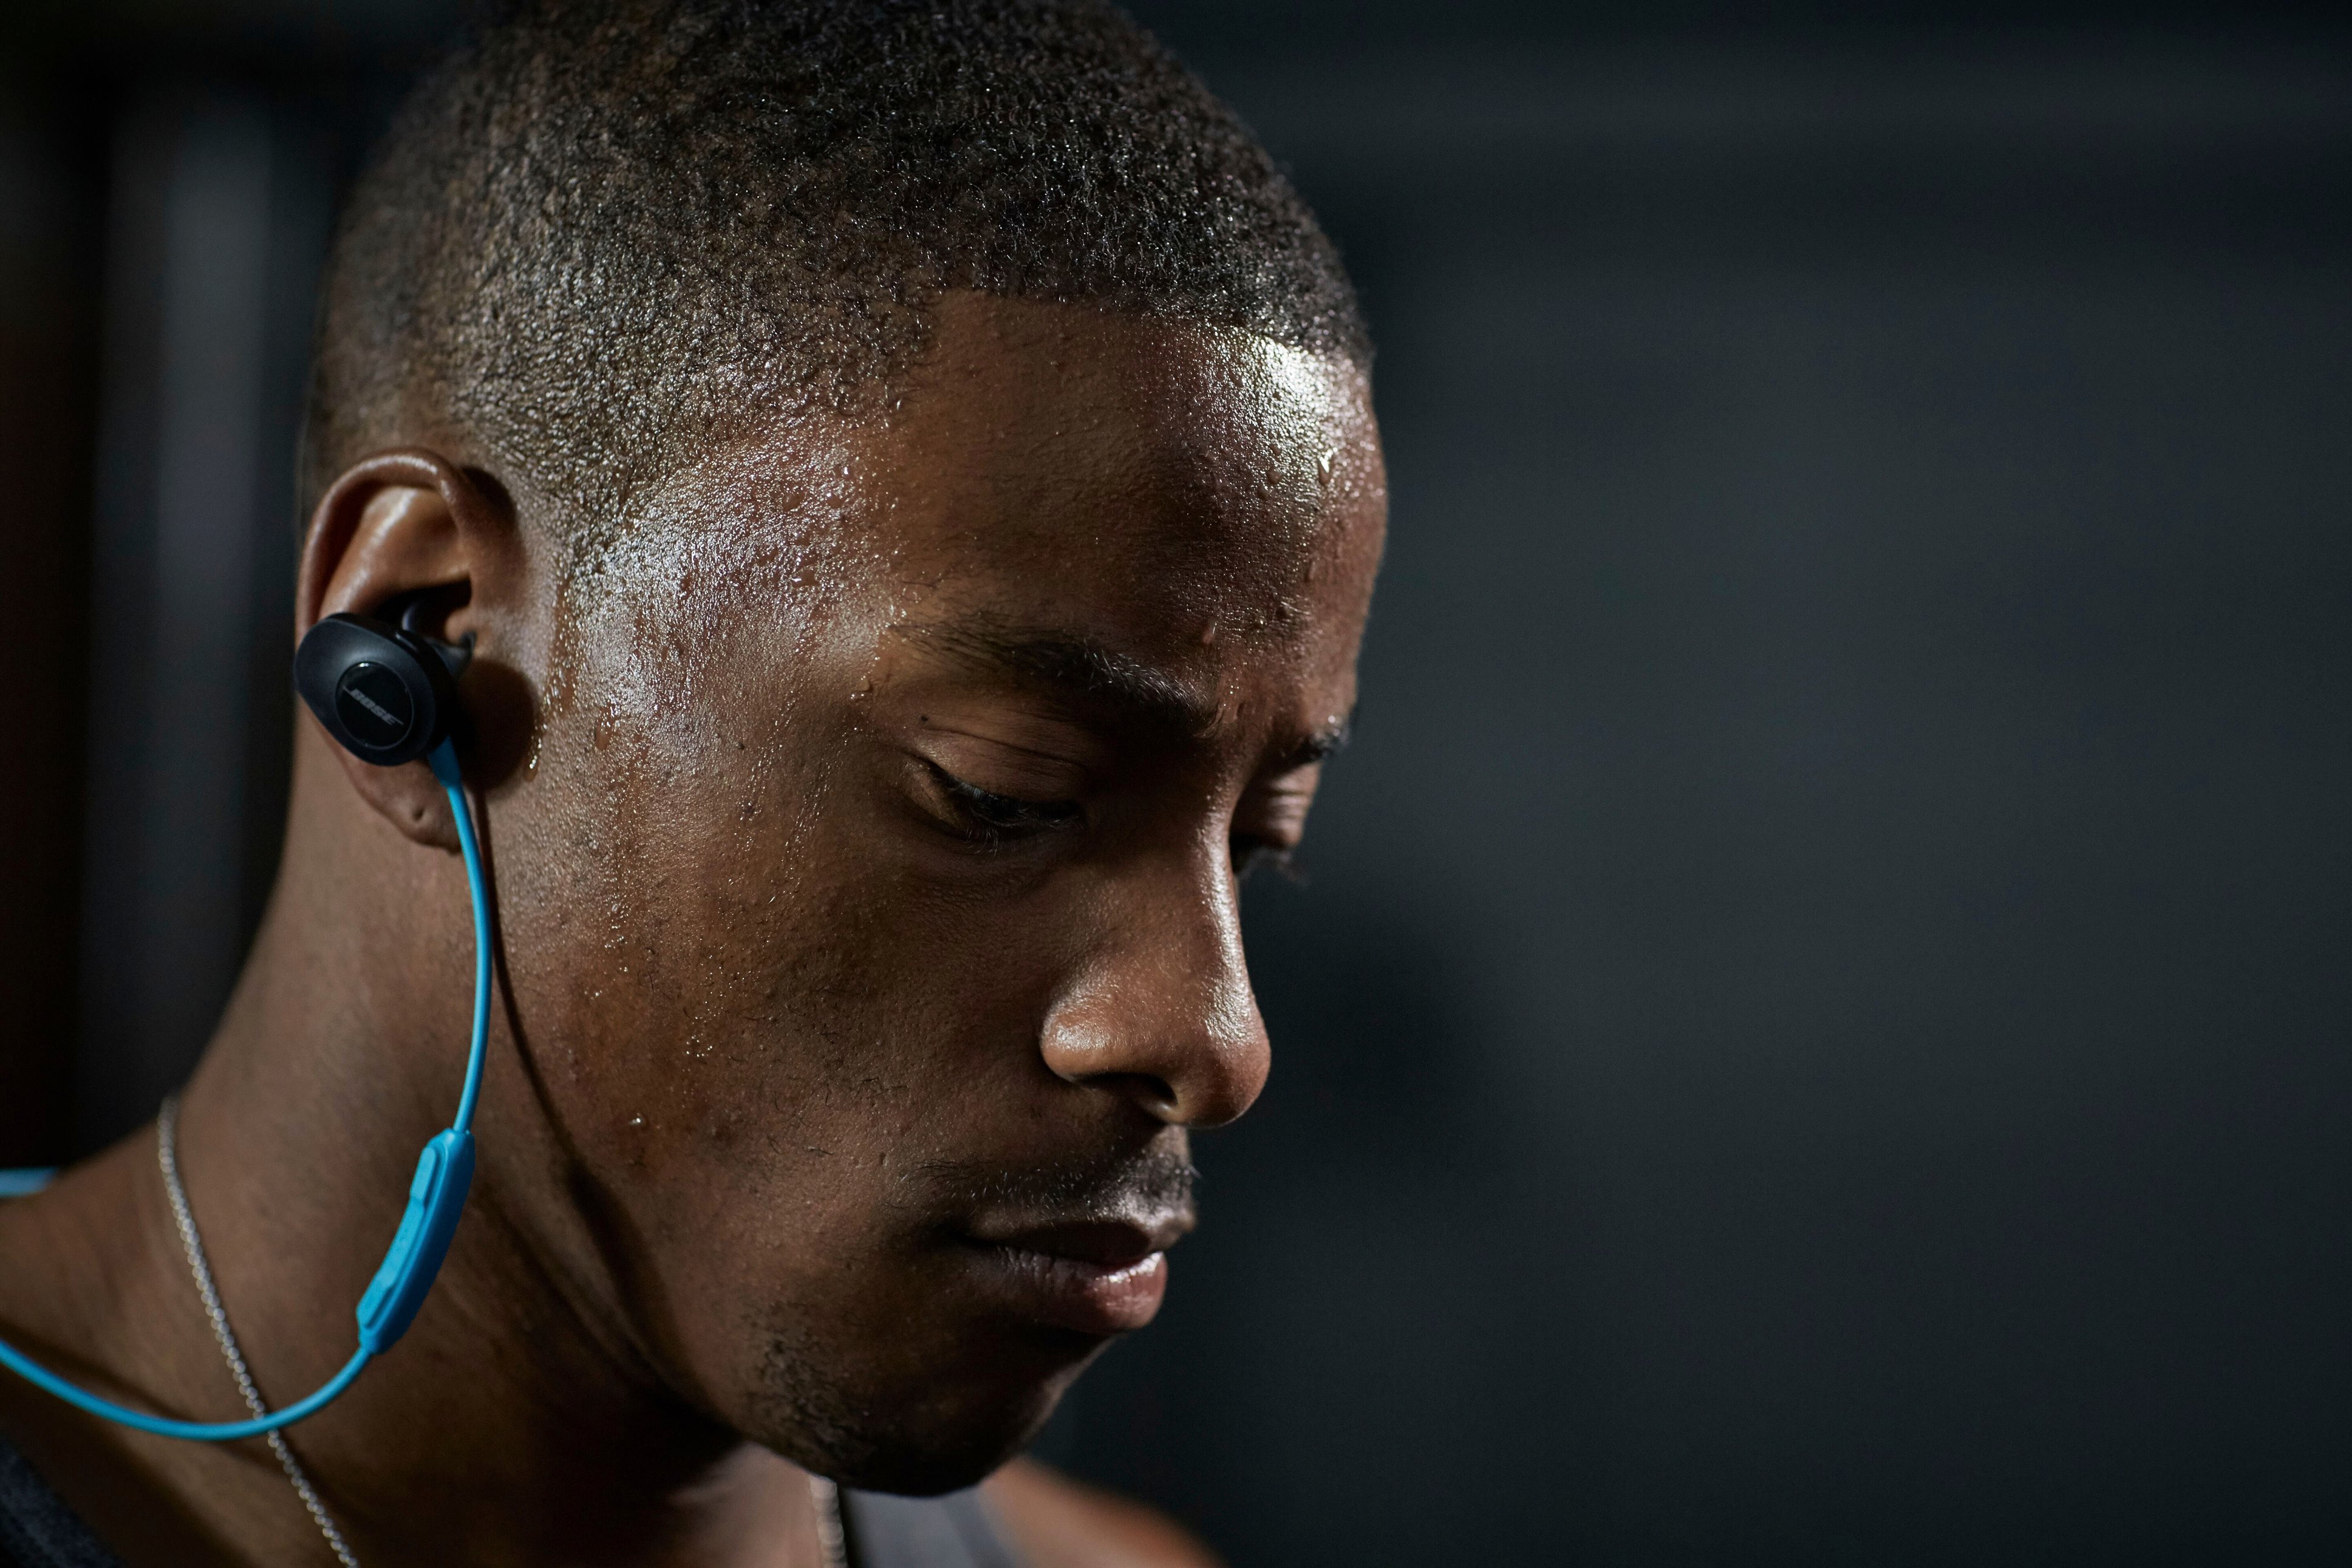 Best Buy: Bose SoundSport Wireless Sports In-Ear Earbuds Aqua